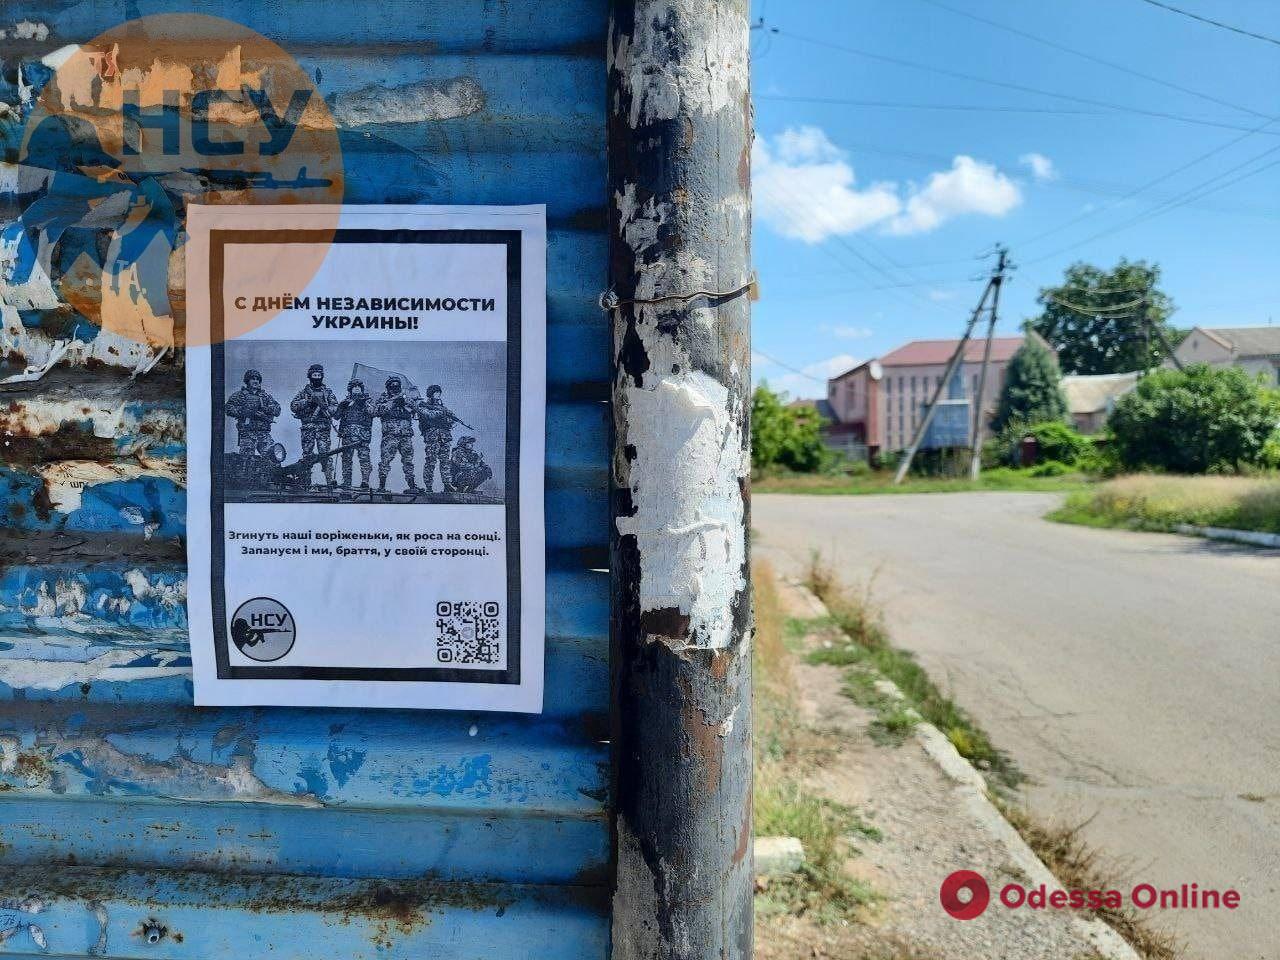 «Згинуть наші воріженьки, як роса на сонці»: украинские партизаны расклеили открытки в оккупированных городах